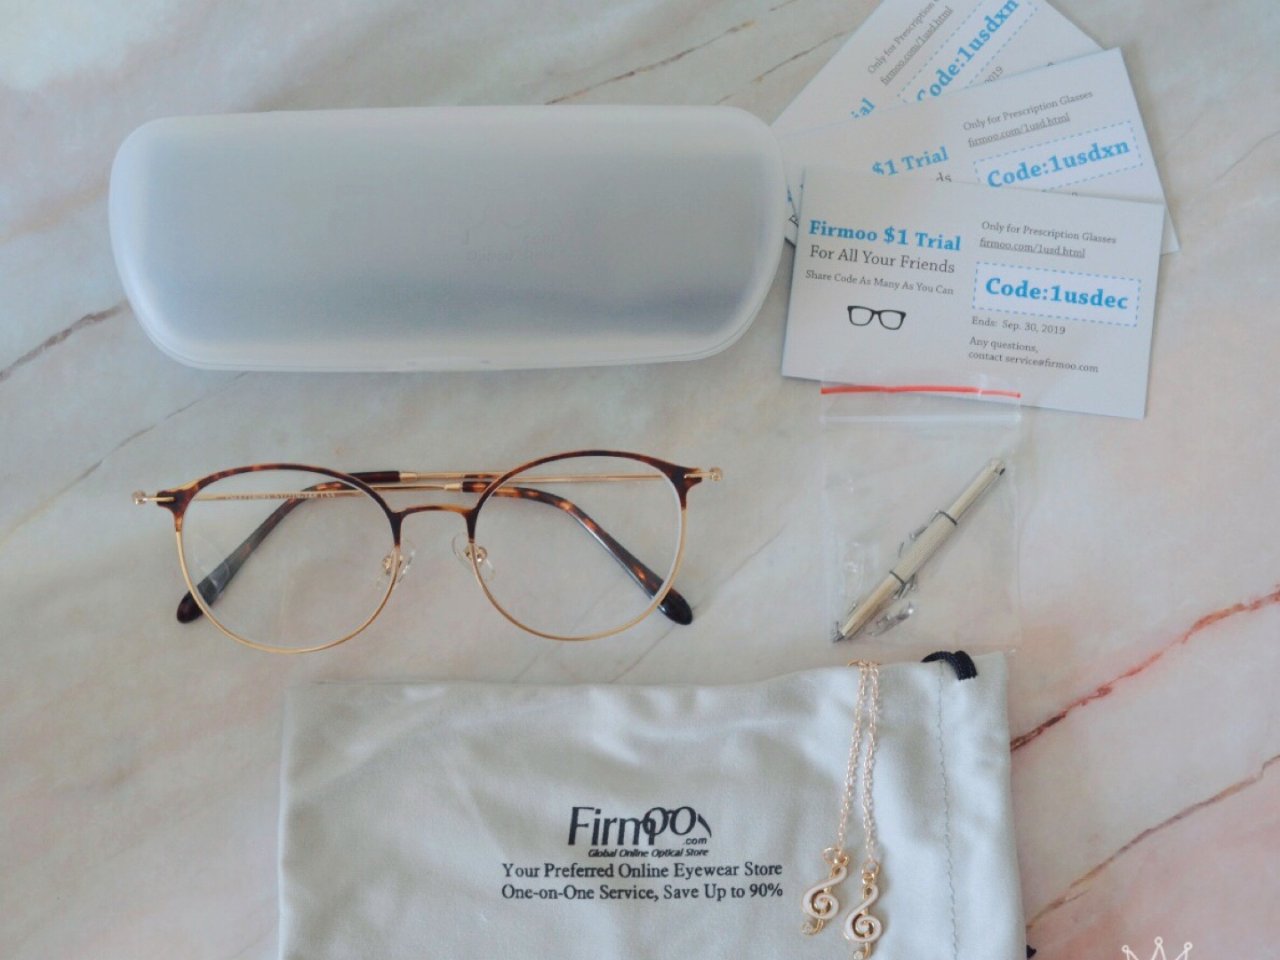 YSL1718085M款式,小配件,友好的优惠卷,眼镜盒,眼镜布袋,送的眼镜链,Firmoo